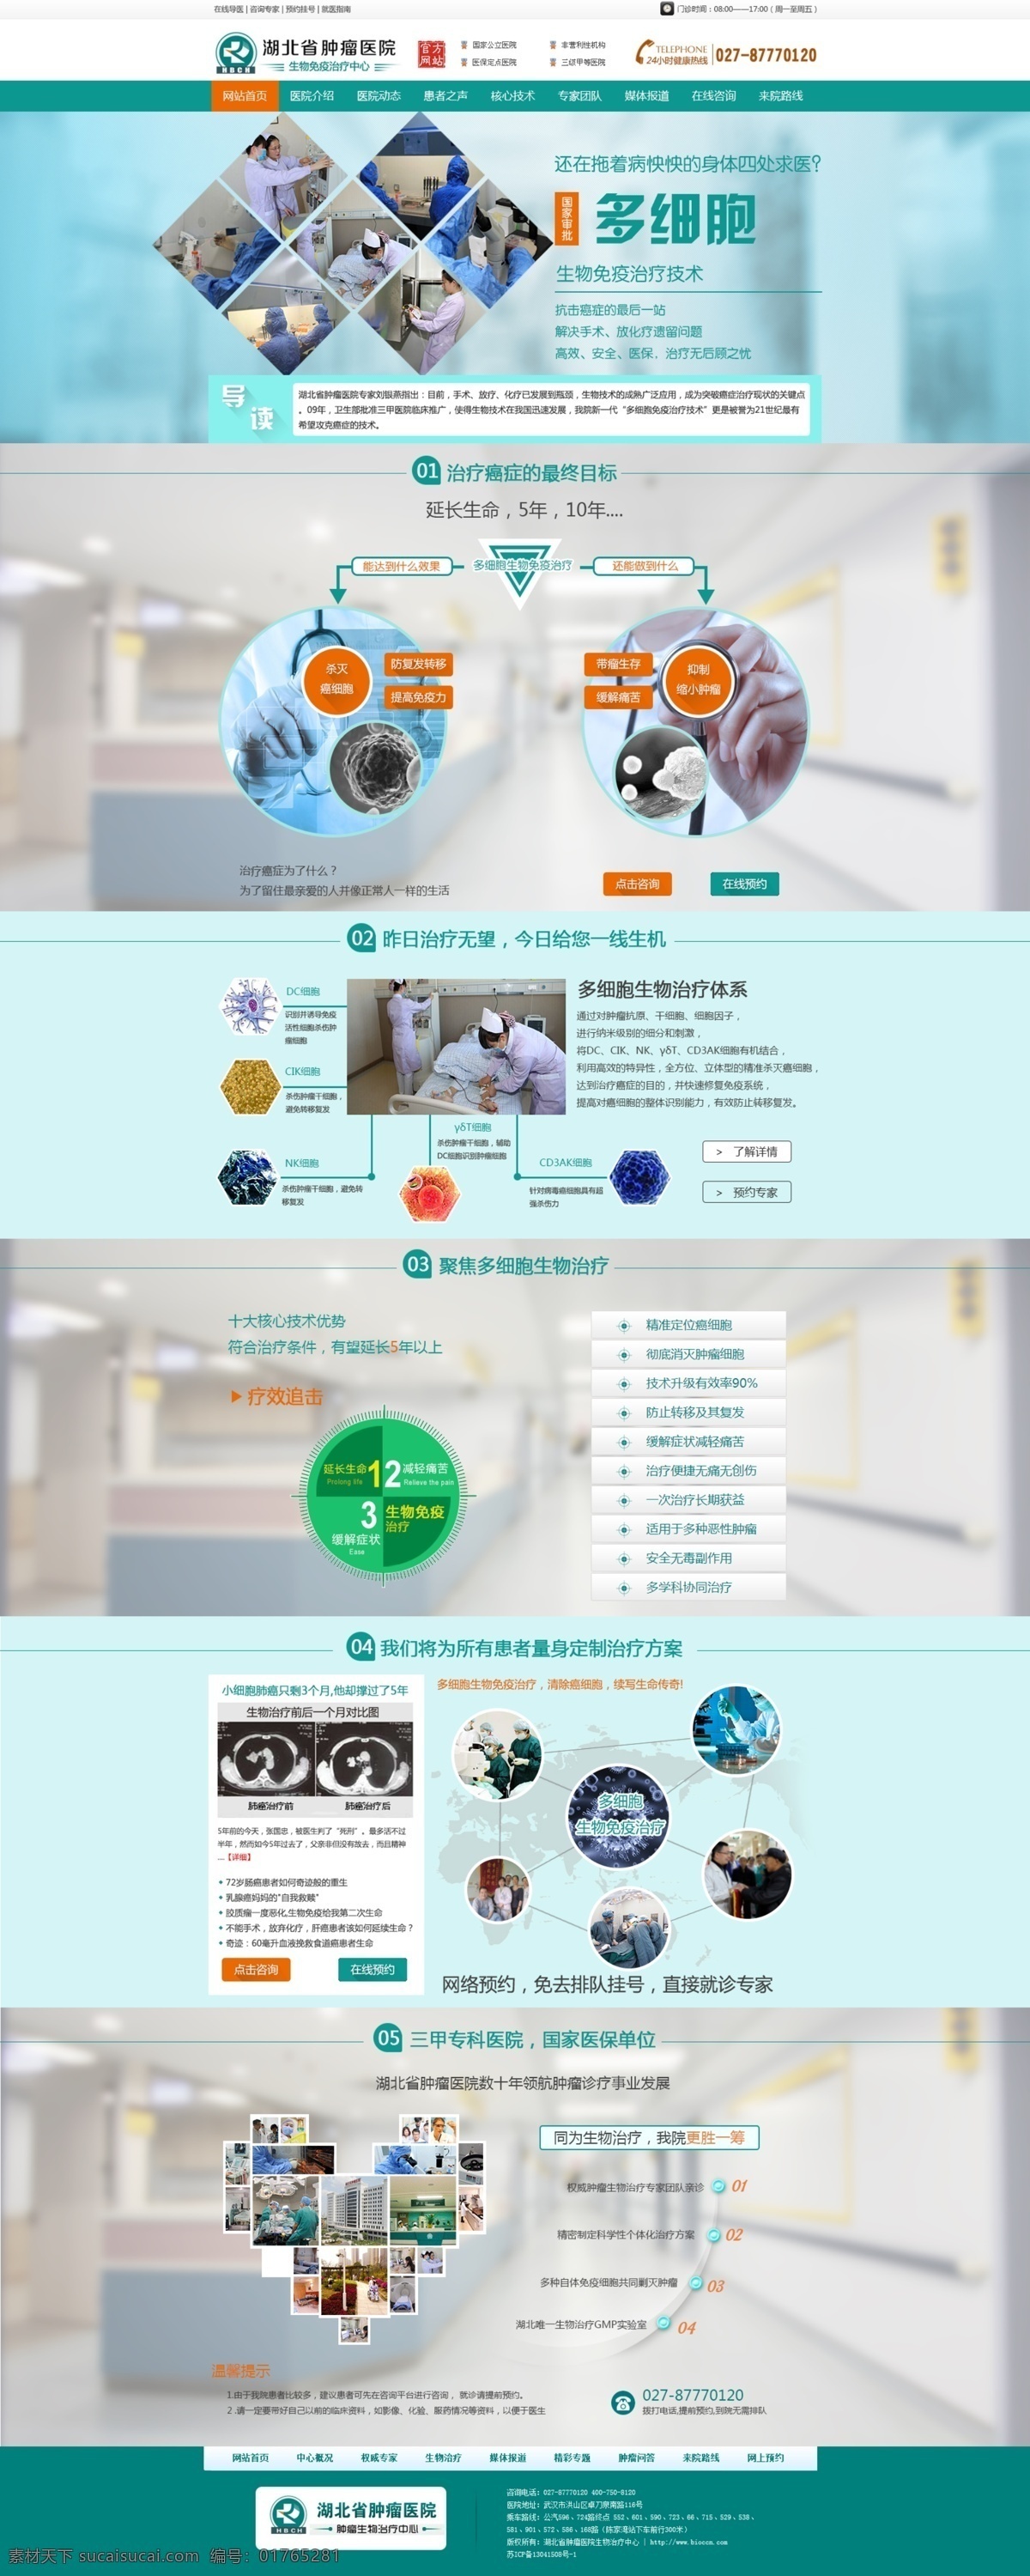 细胞 生物技术 网站 背景 扁平 大气 技术 科研 蓝色 绿色 多细胞 生物 医疗 医院 web 界面设计 中文模板 网页素材 其他网页素材